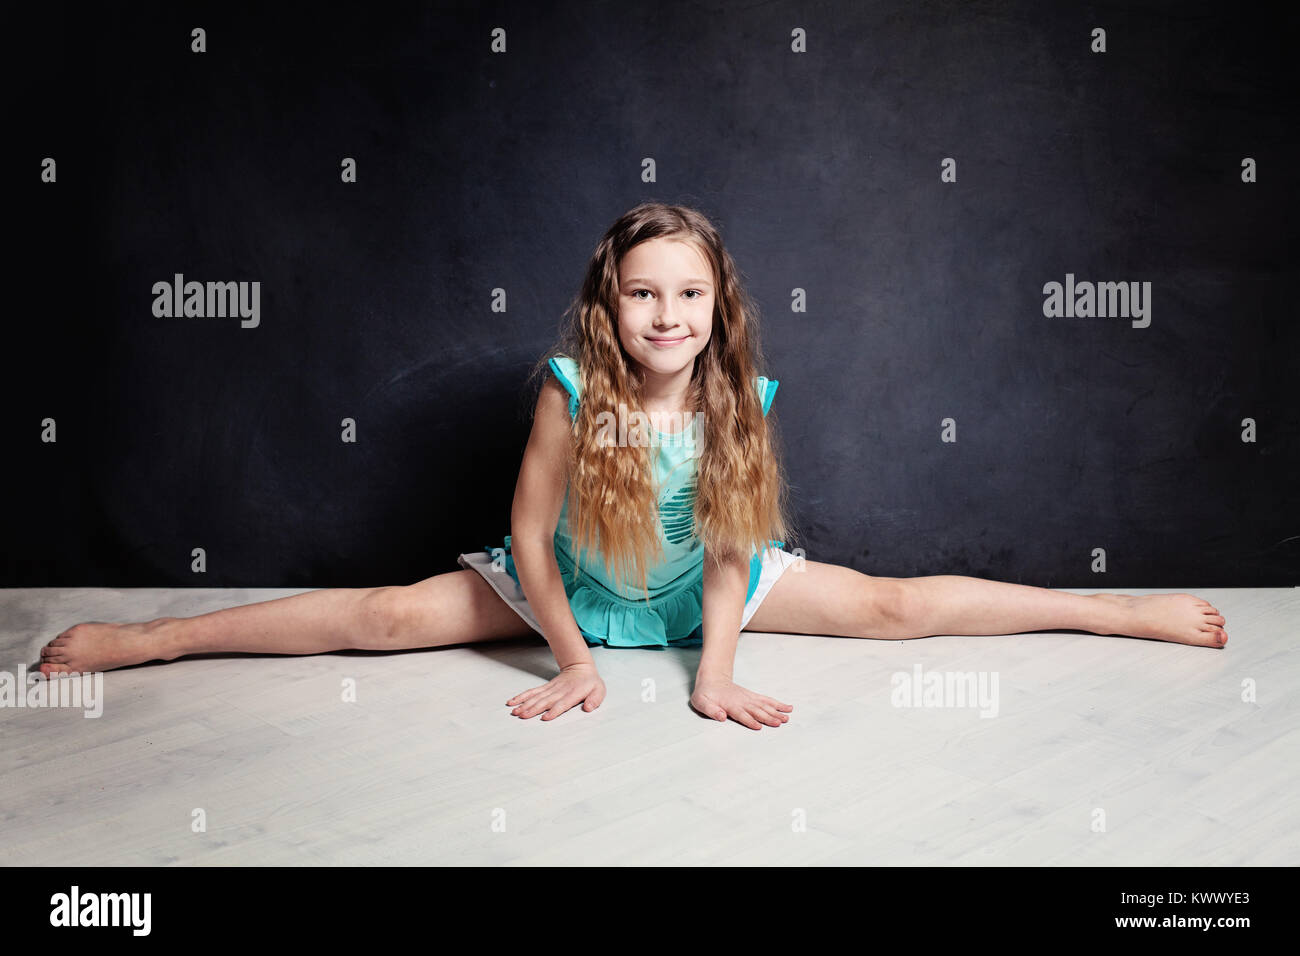 Jeune fille adolescente. La ficelle de gymnastique Banque D'Images